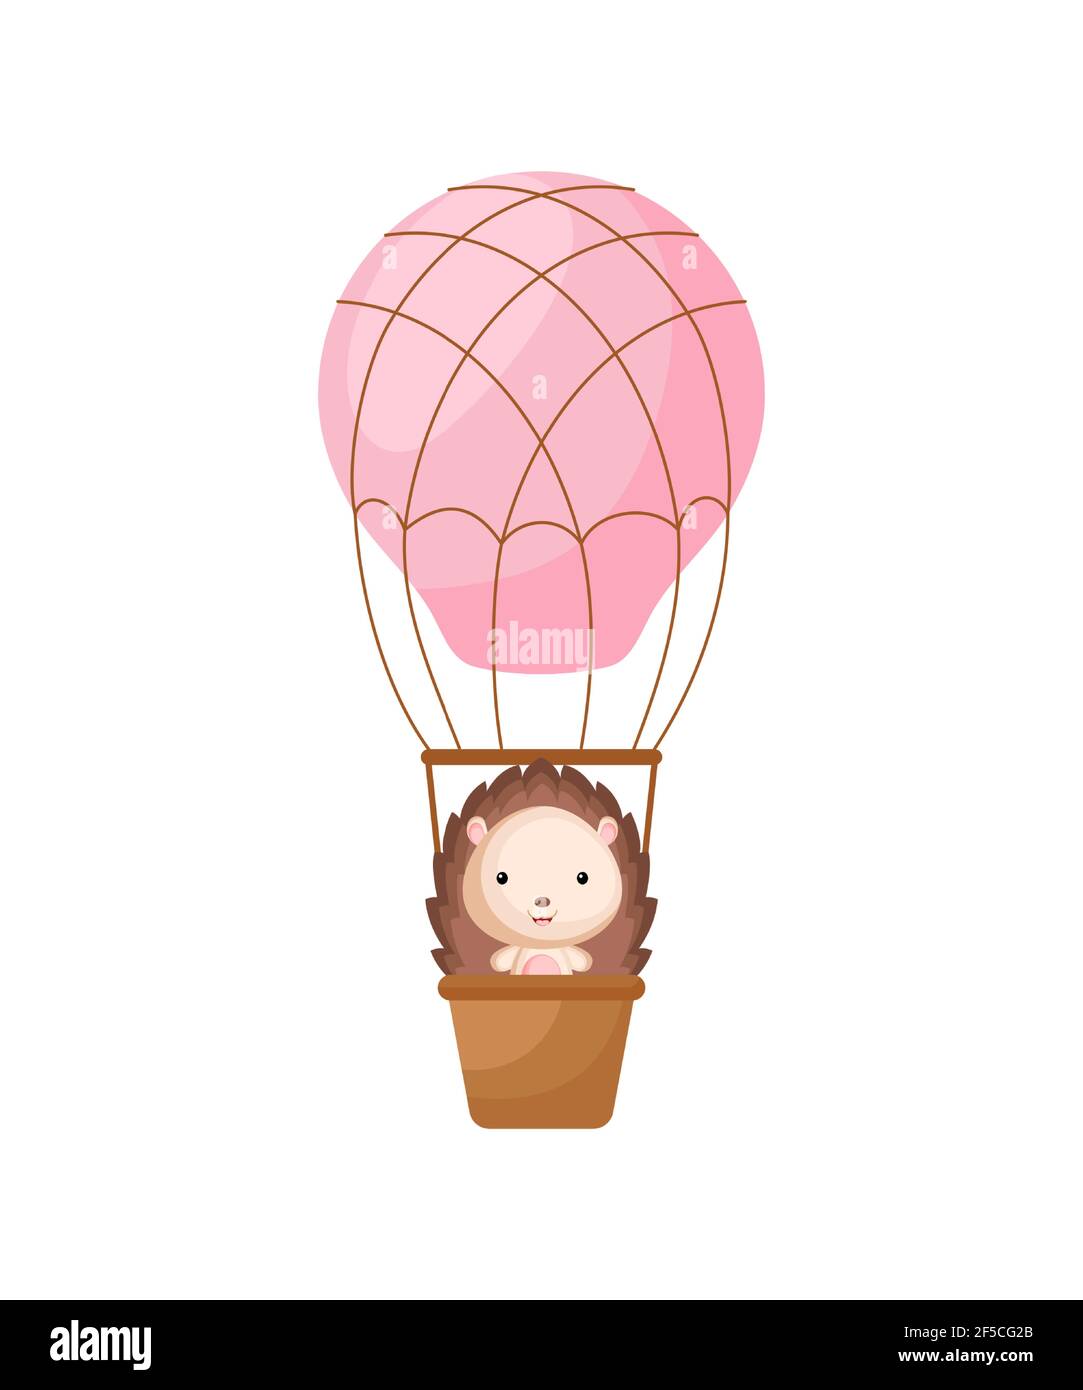 Petite mouche de hérisson mignon sur le ballon d'air chaud rose. Personnage  de dessin animé pour les enfants livre, album, douche de bébé, carte de  voeux, invitation de fête, maison int Image